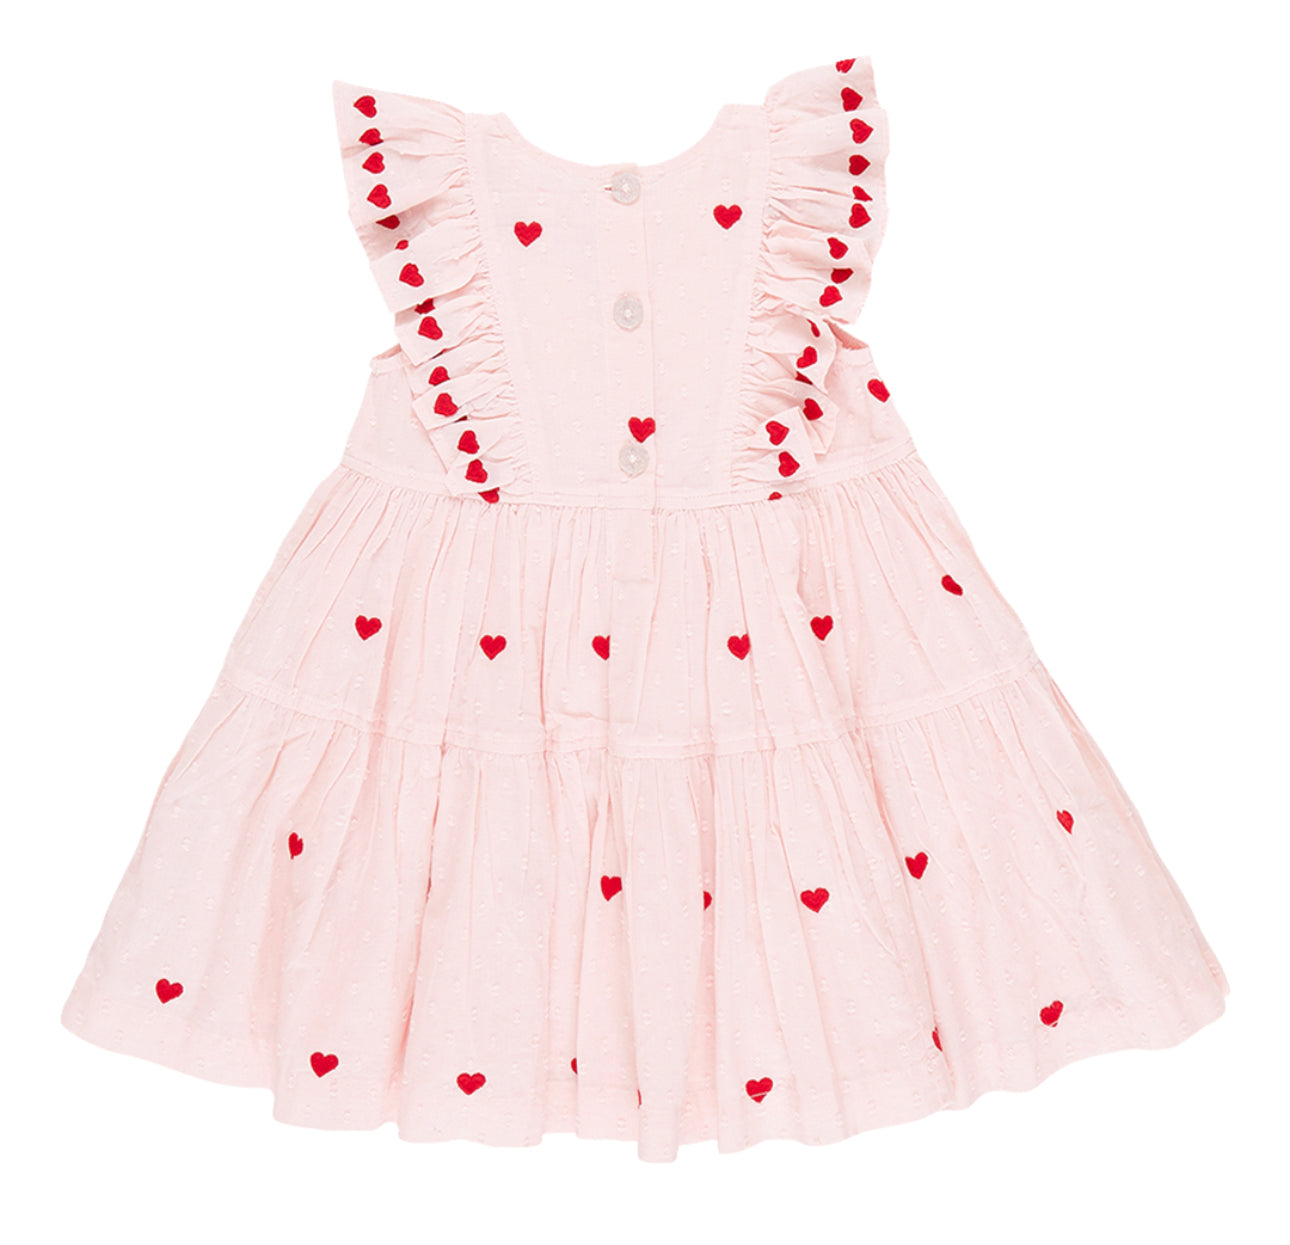 Confetti heart embroidery dress